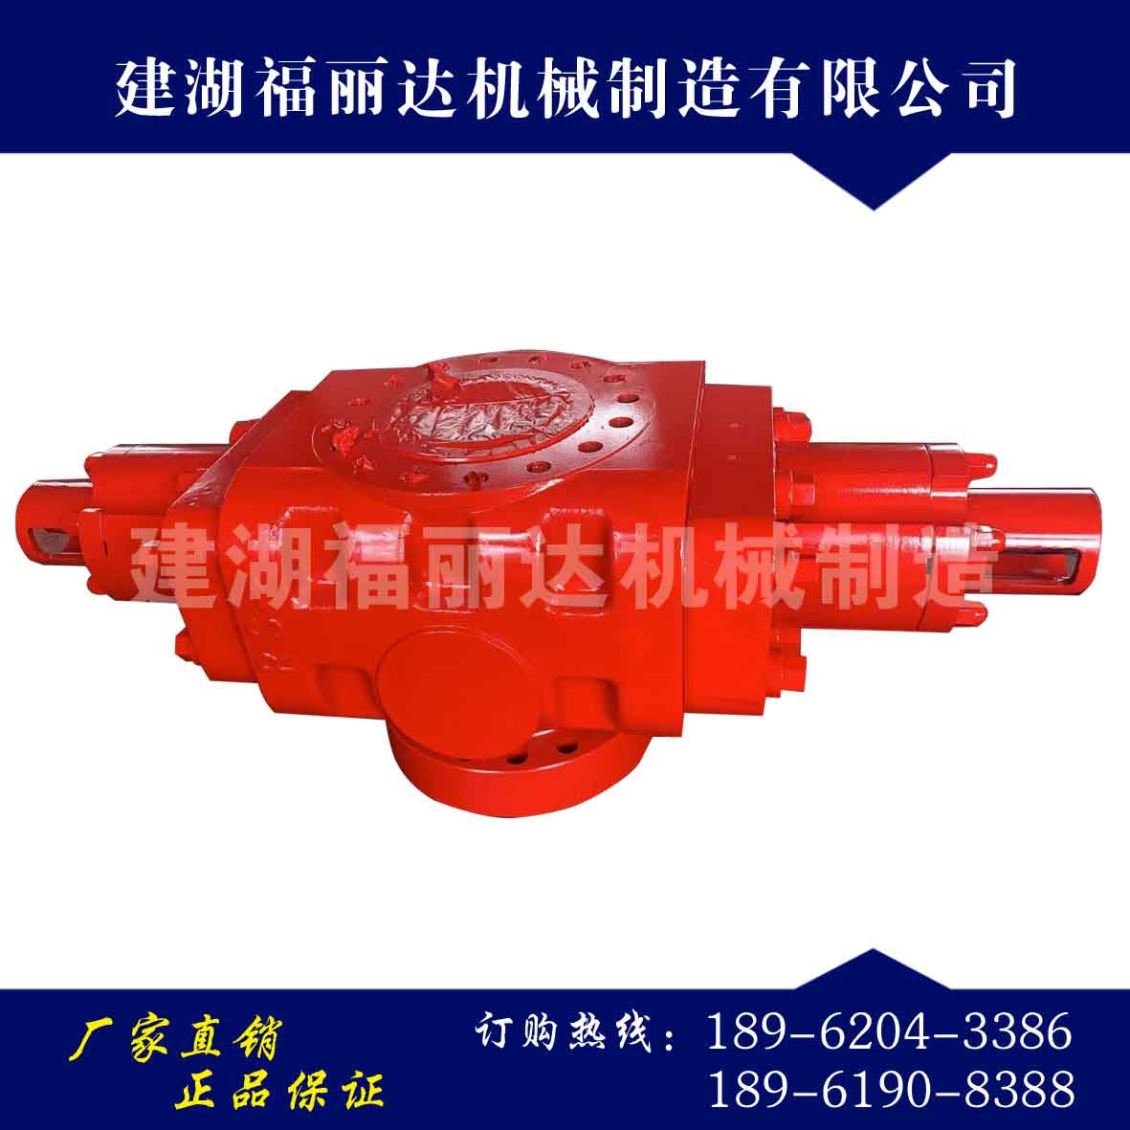 天津防喷器是一种重要的井控装置